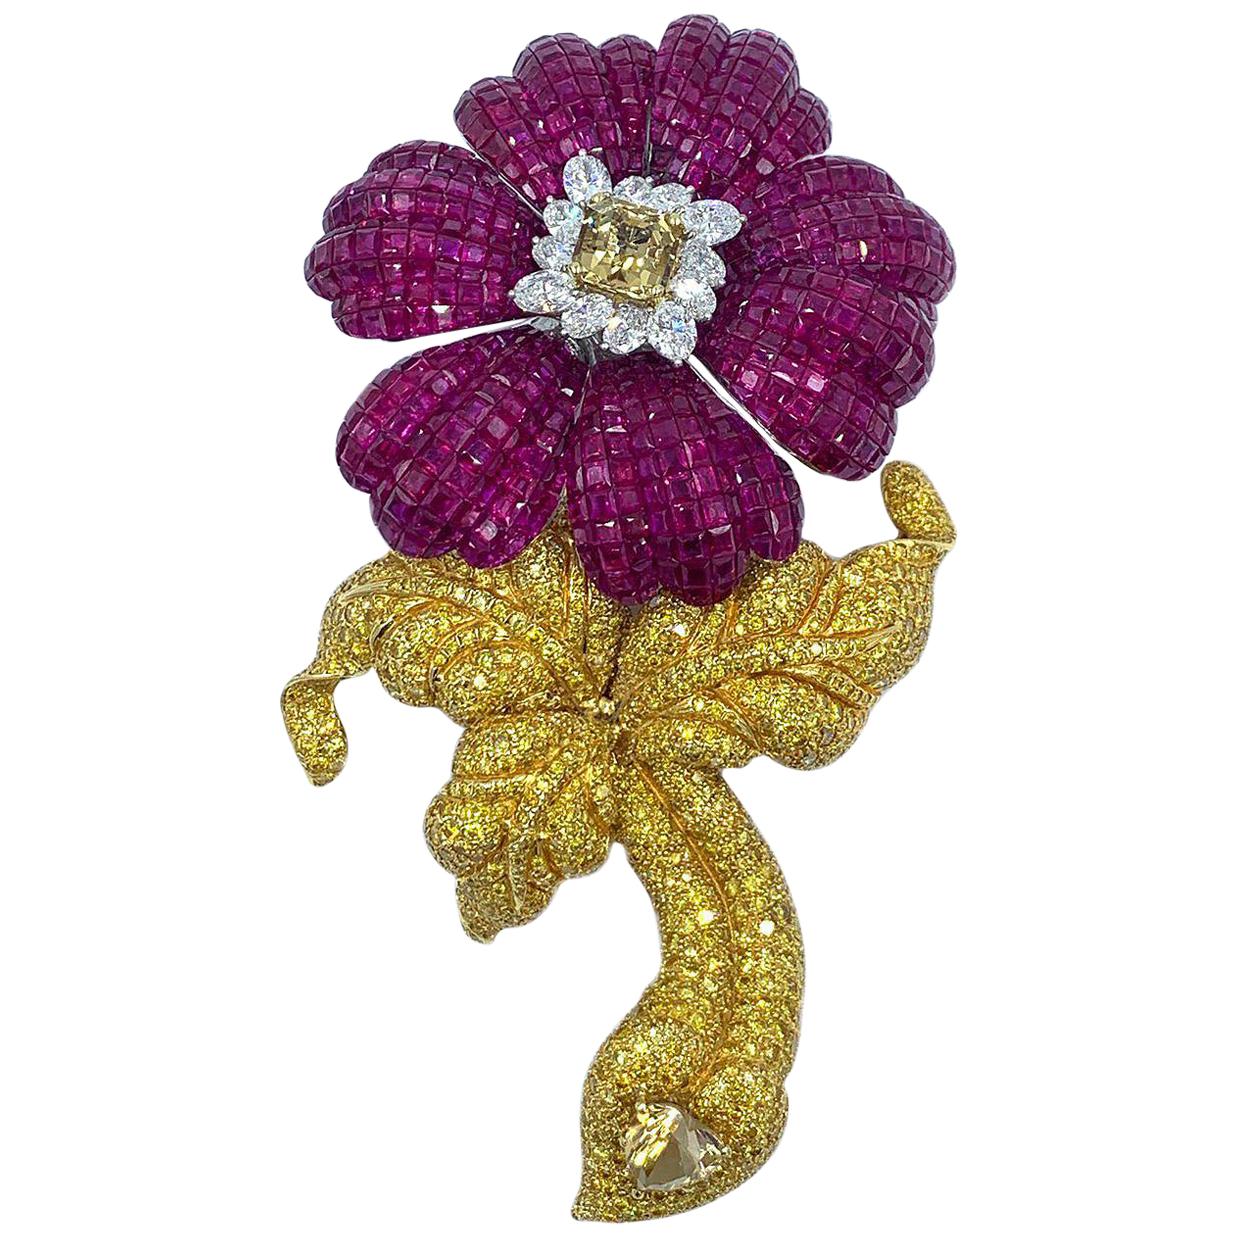 Massive und fabelhafte Blumenbrosche mit Rubin und kanarischen Diamanten mit abnehmbarem Stem